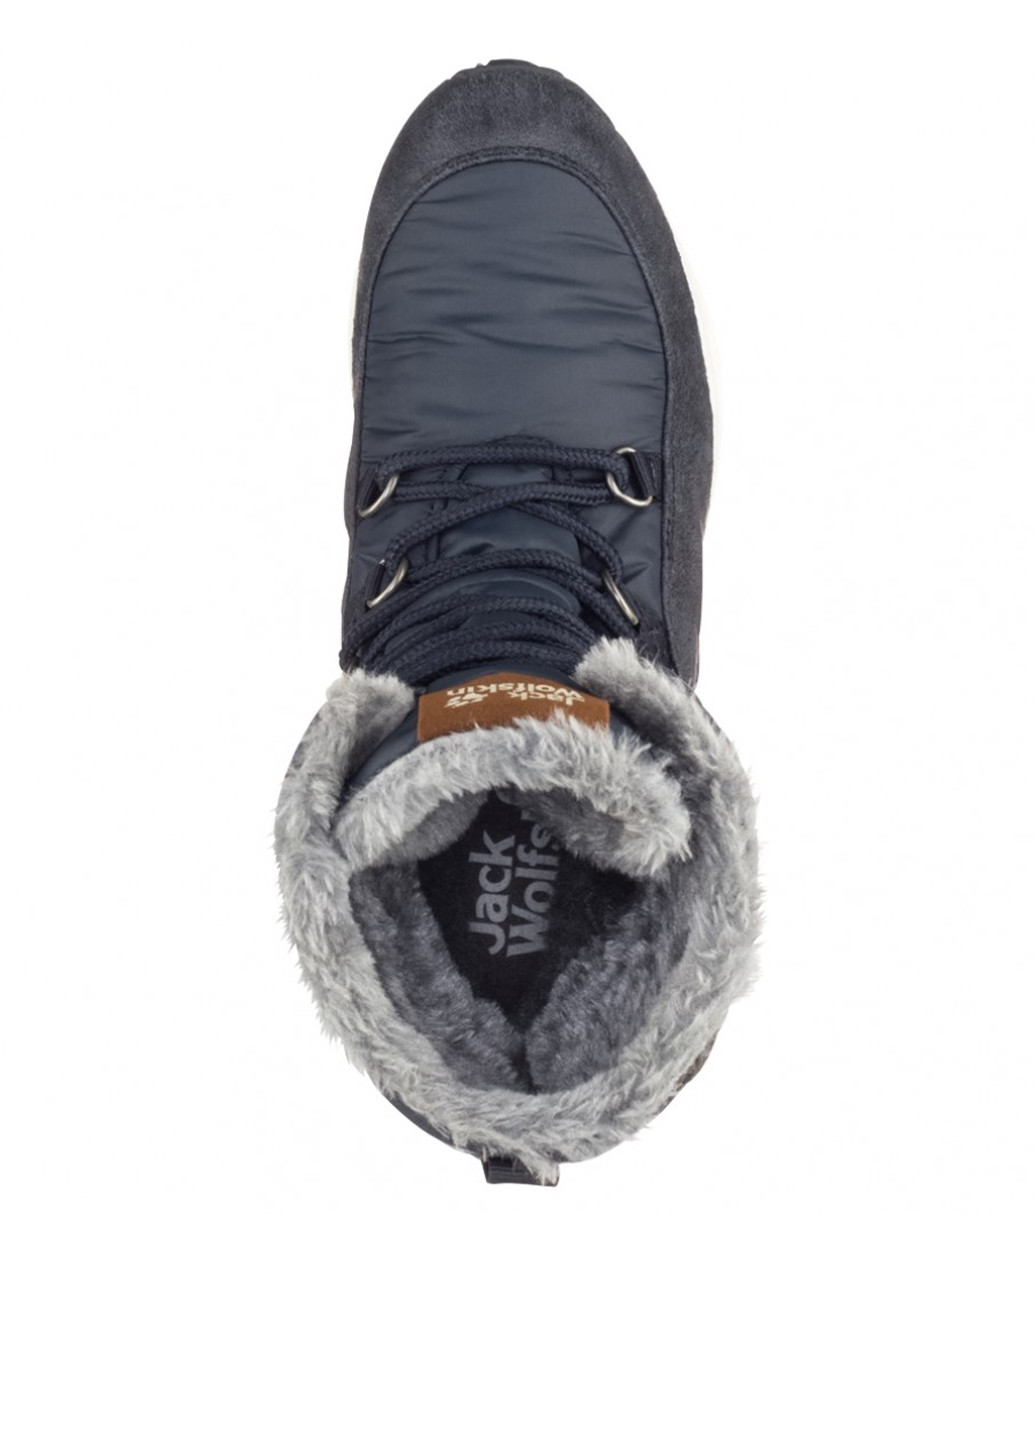 Зимние ботинки Jack Wolfskin с логотипом из искусственной замши, тканевые